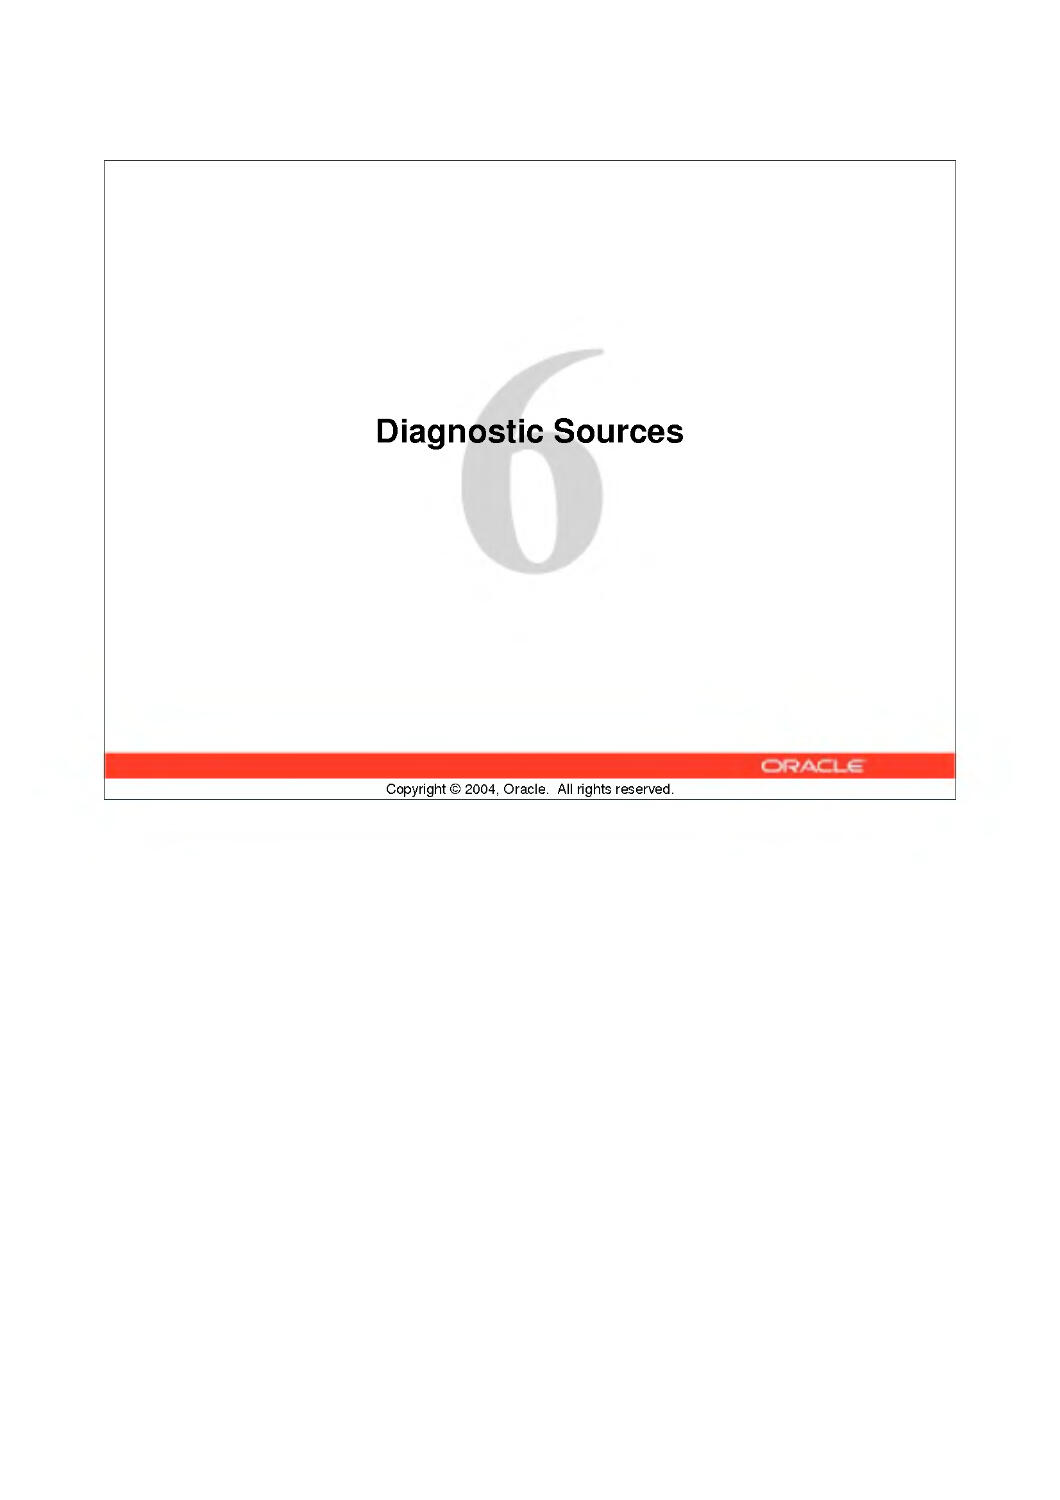 6 Diagnostic Sources